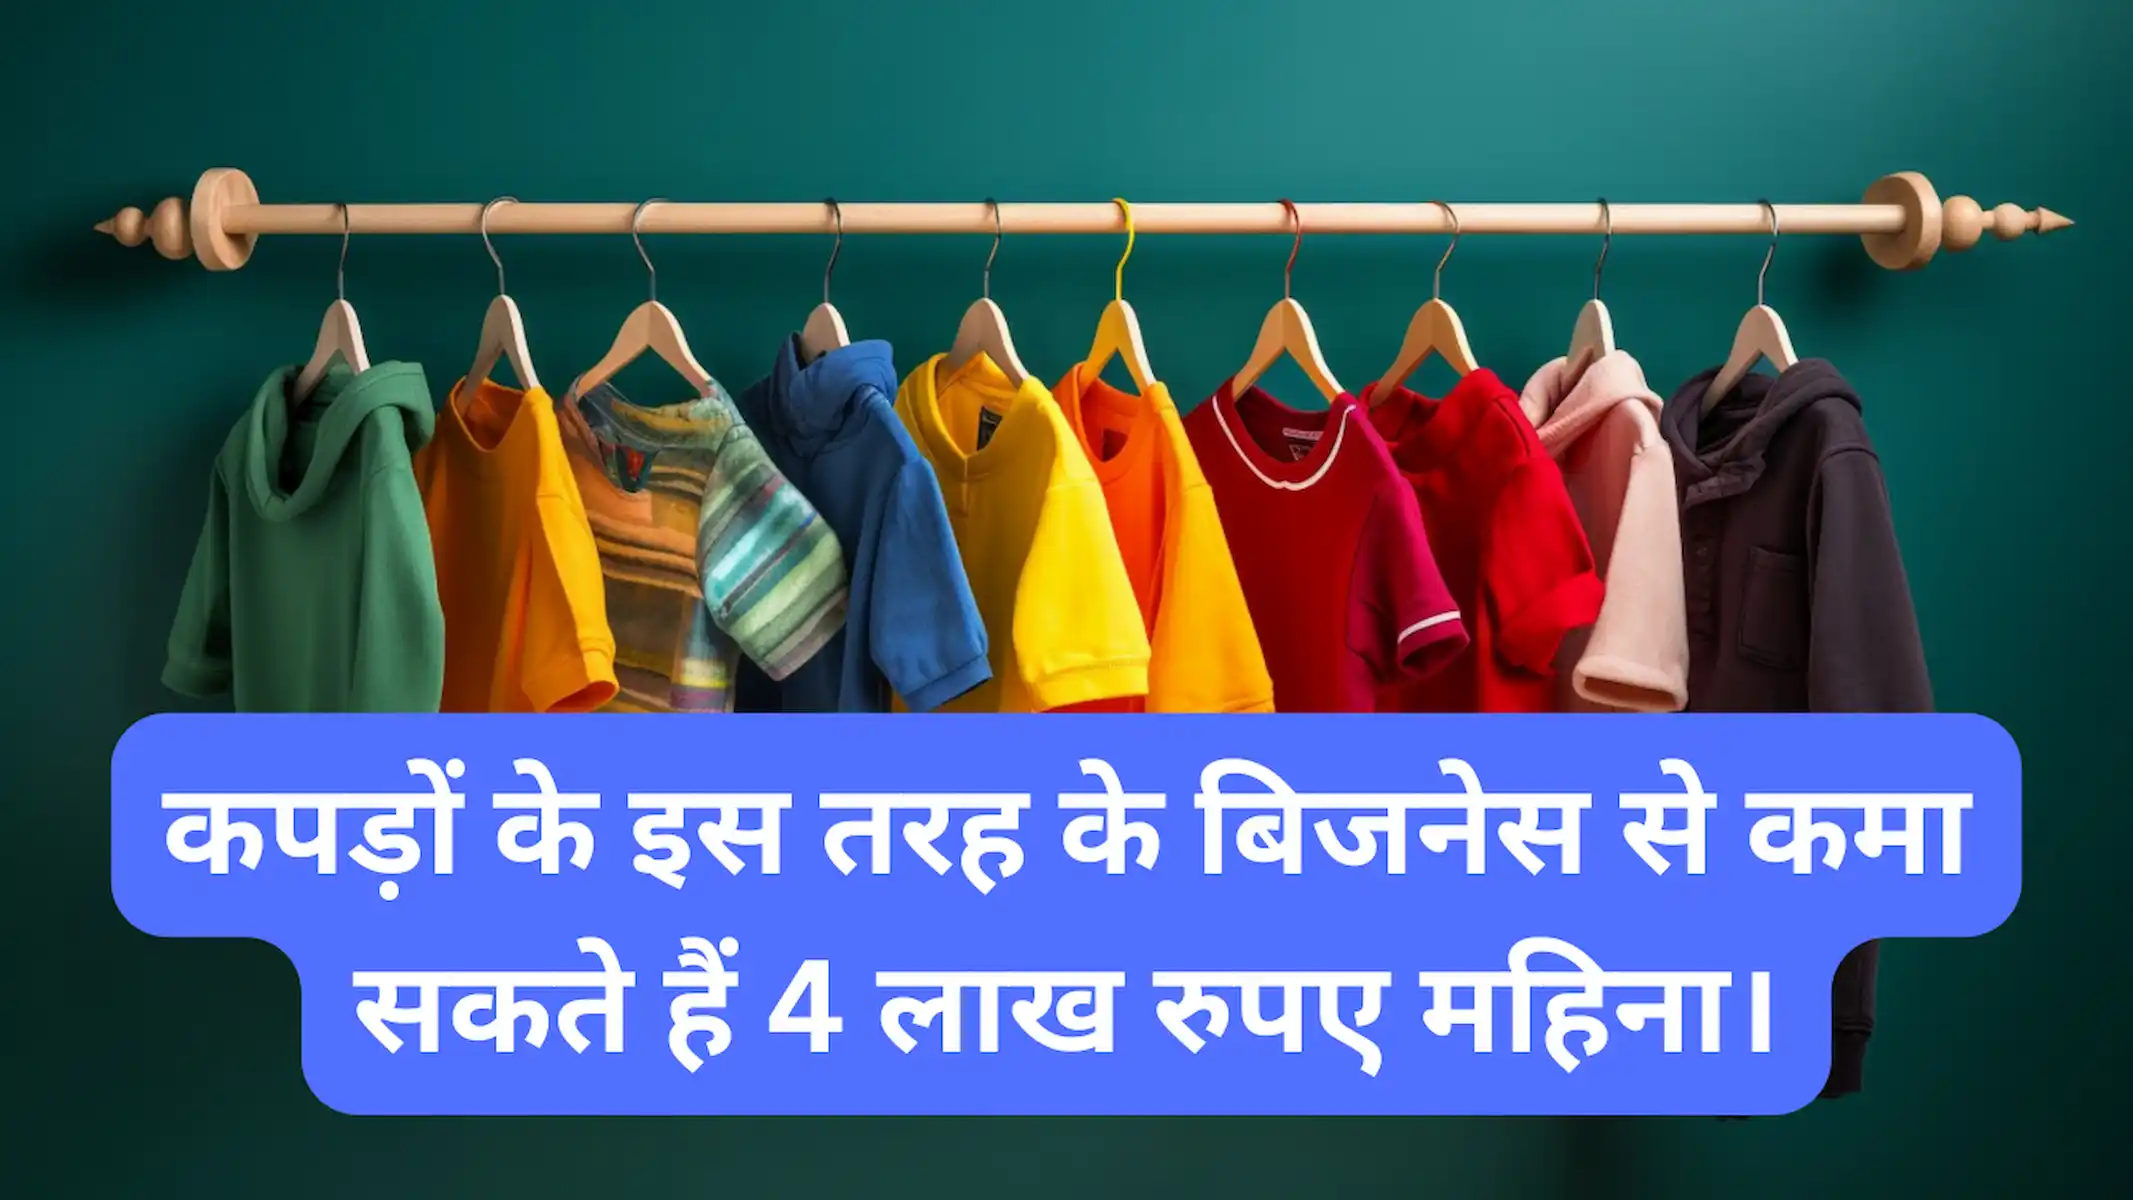 कपड़ों के इस तरह के बिजनेस से कमा सकते हैं 4 लाख रुपए महिना